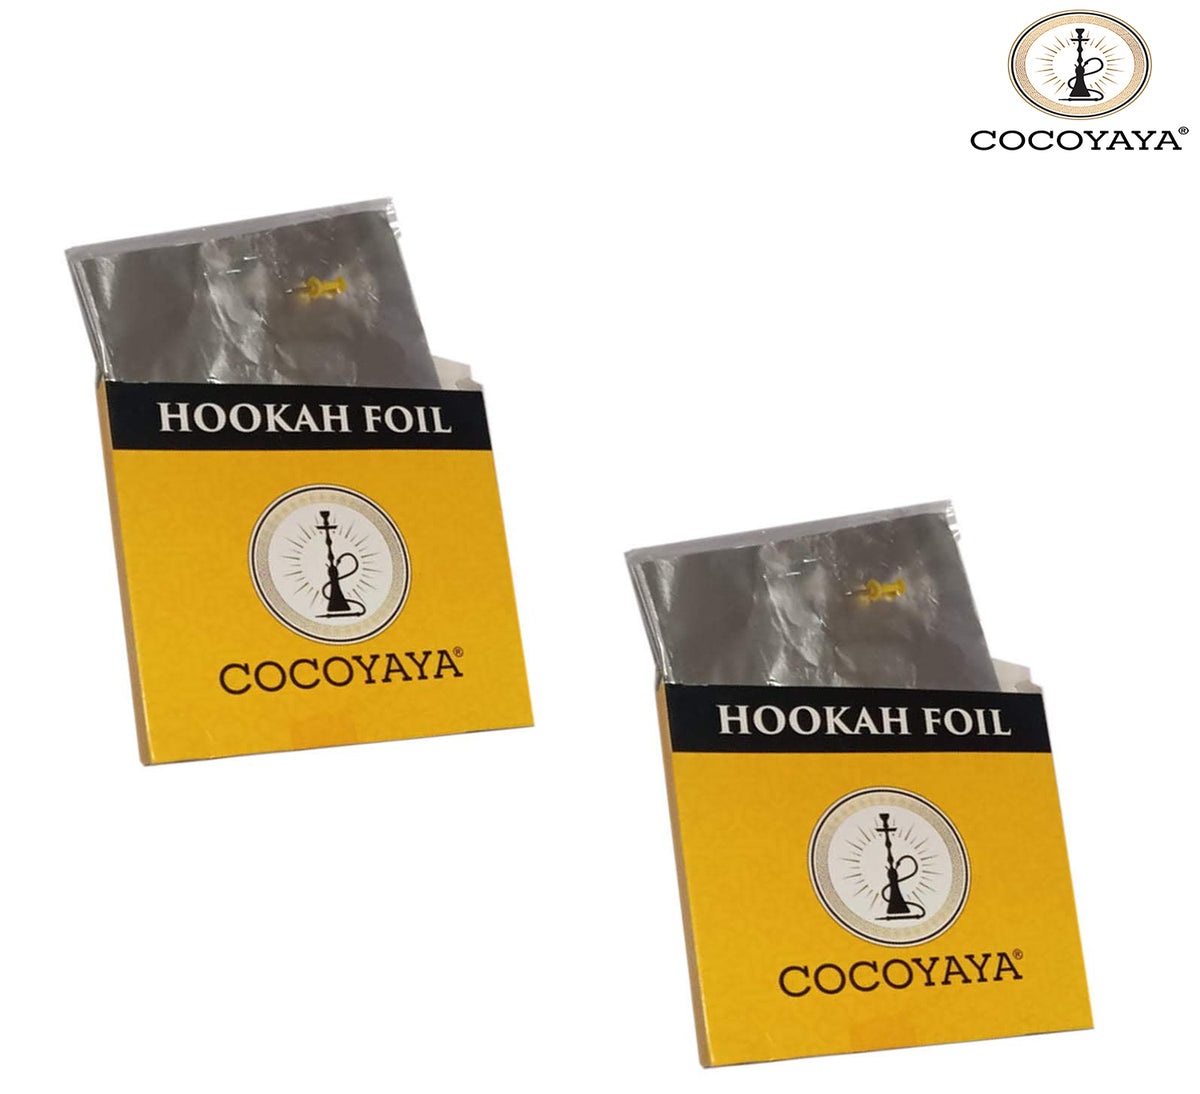 COCOYAYA Aluminium Foil Paper Precut for All Hookah (Pack of 2